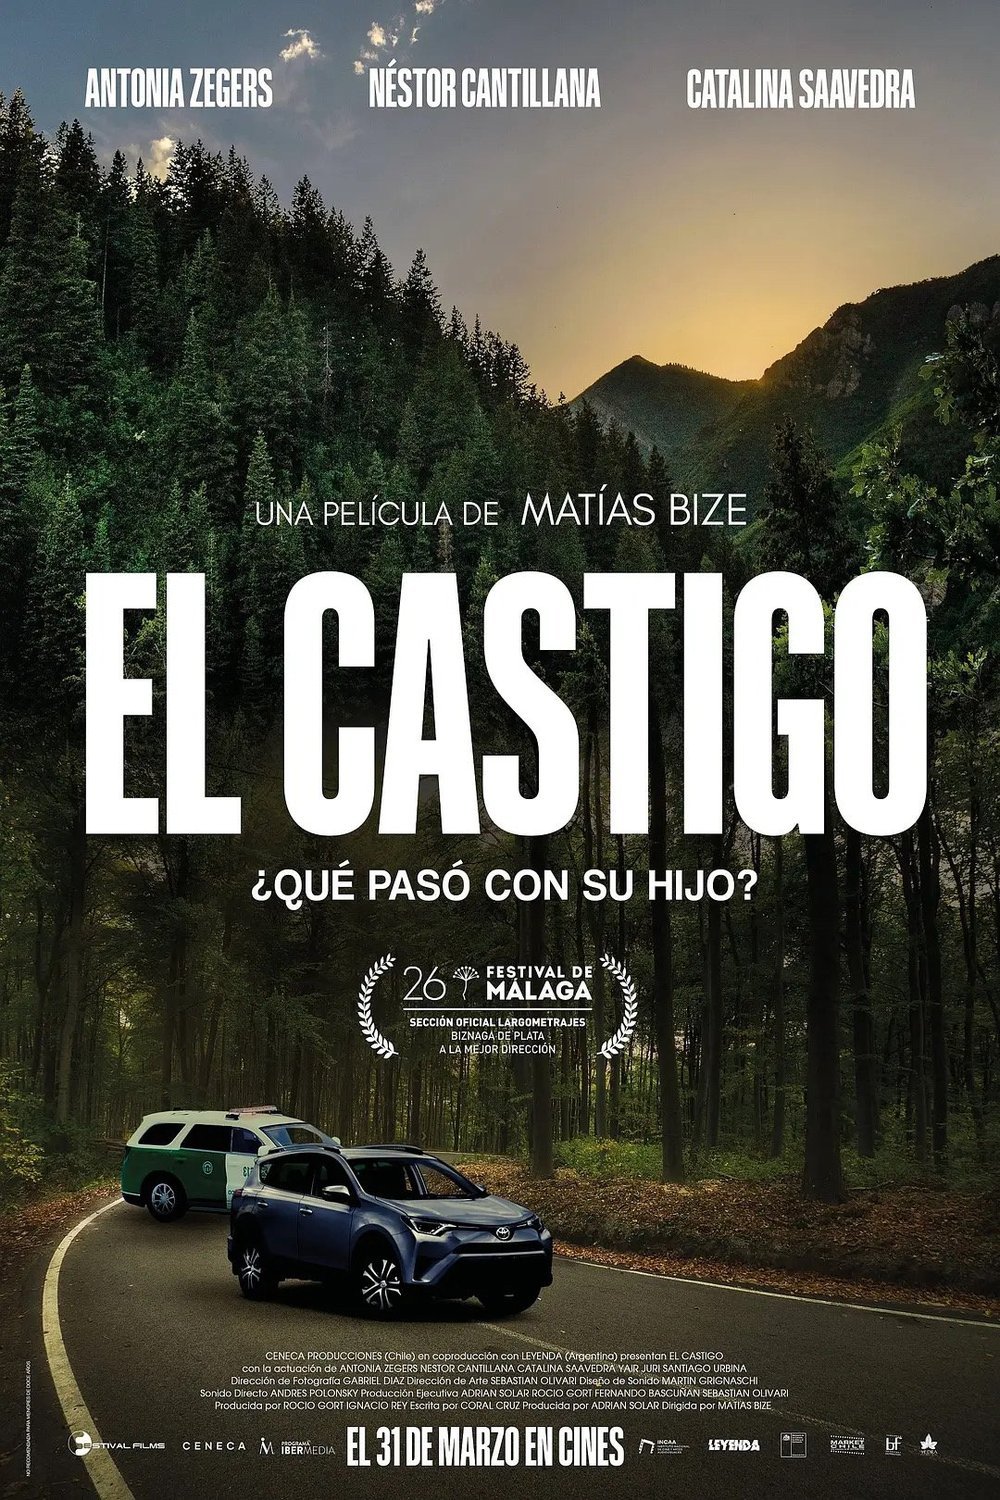 Spanish poster of the movie El castigo